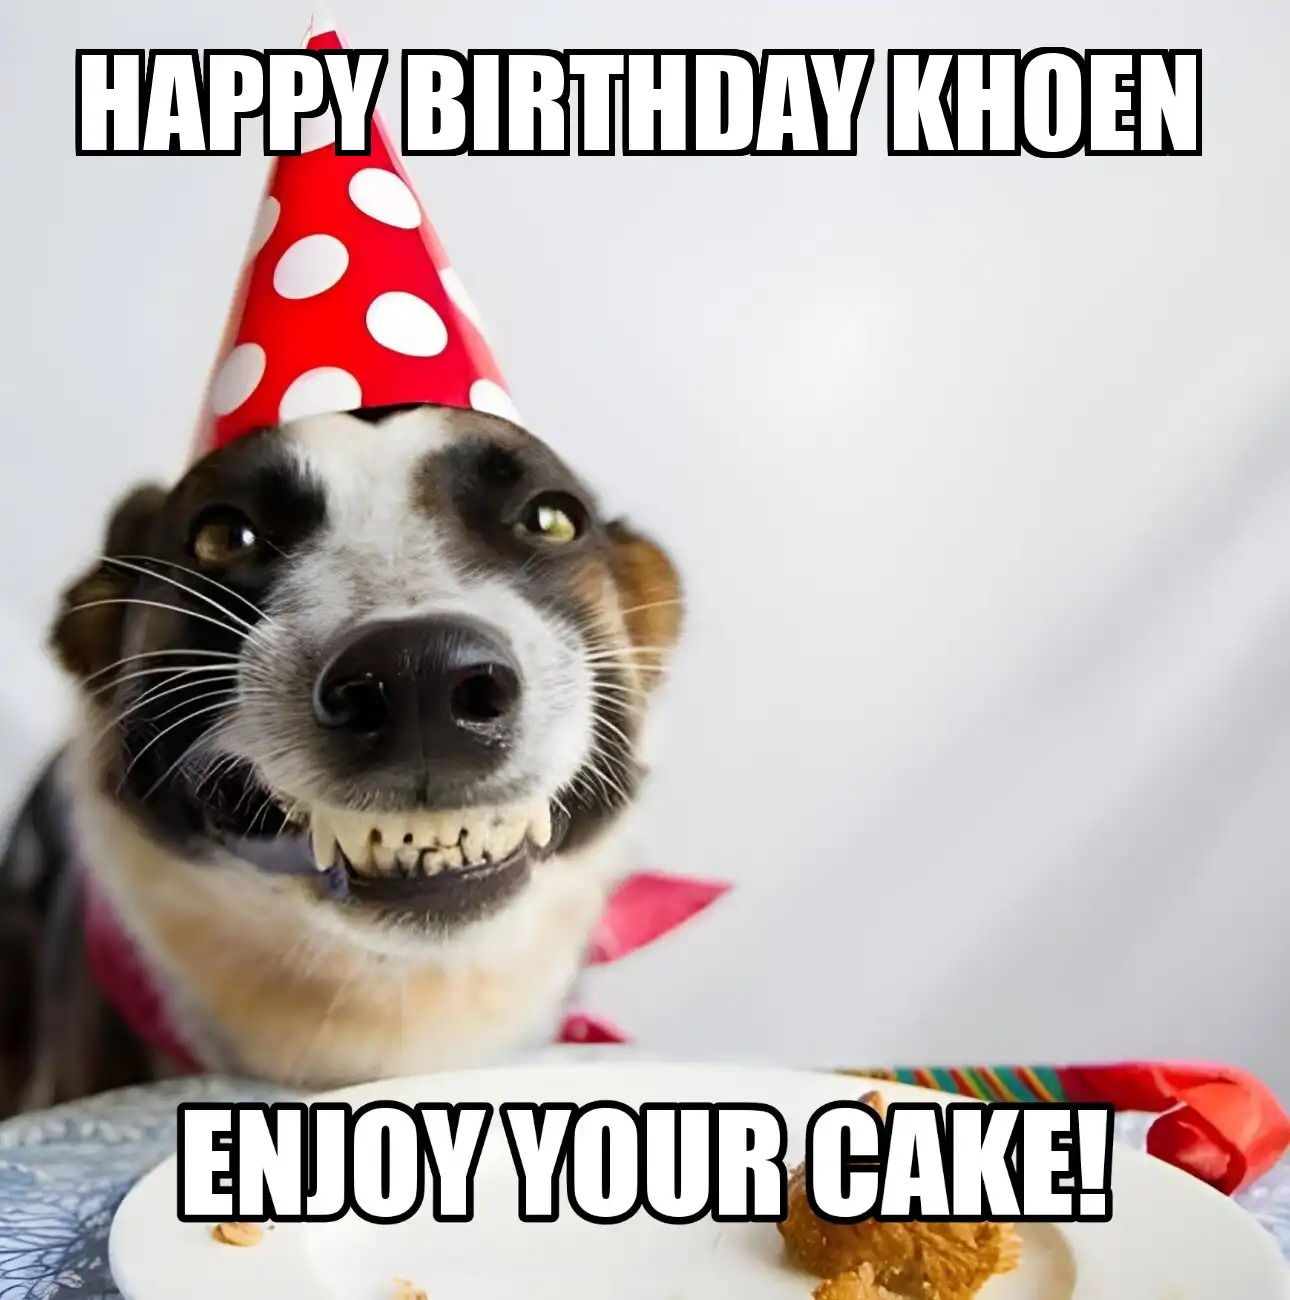 Happy Birthday Khoen Enjoy Your Cake Dog Meme